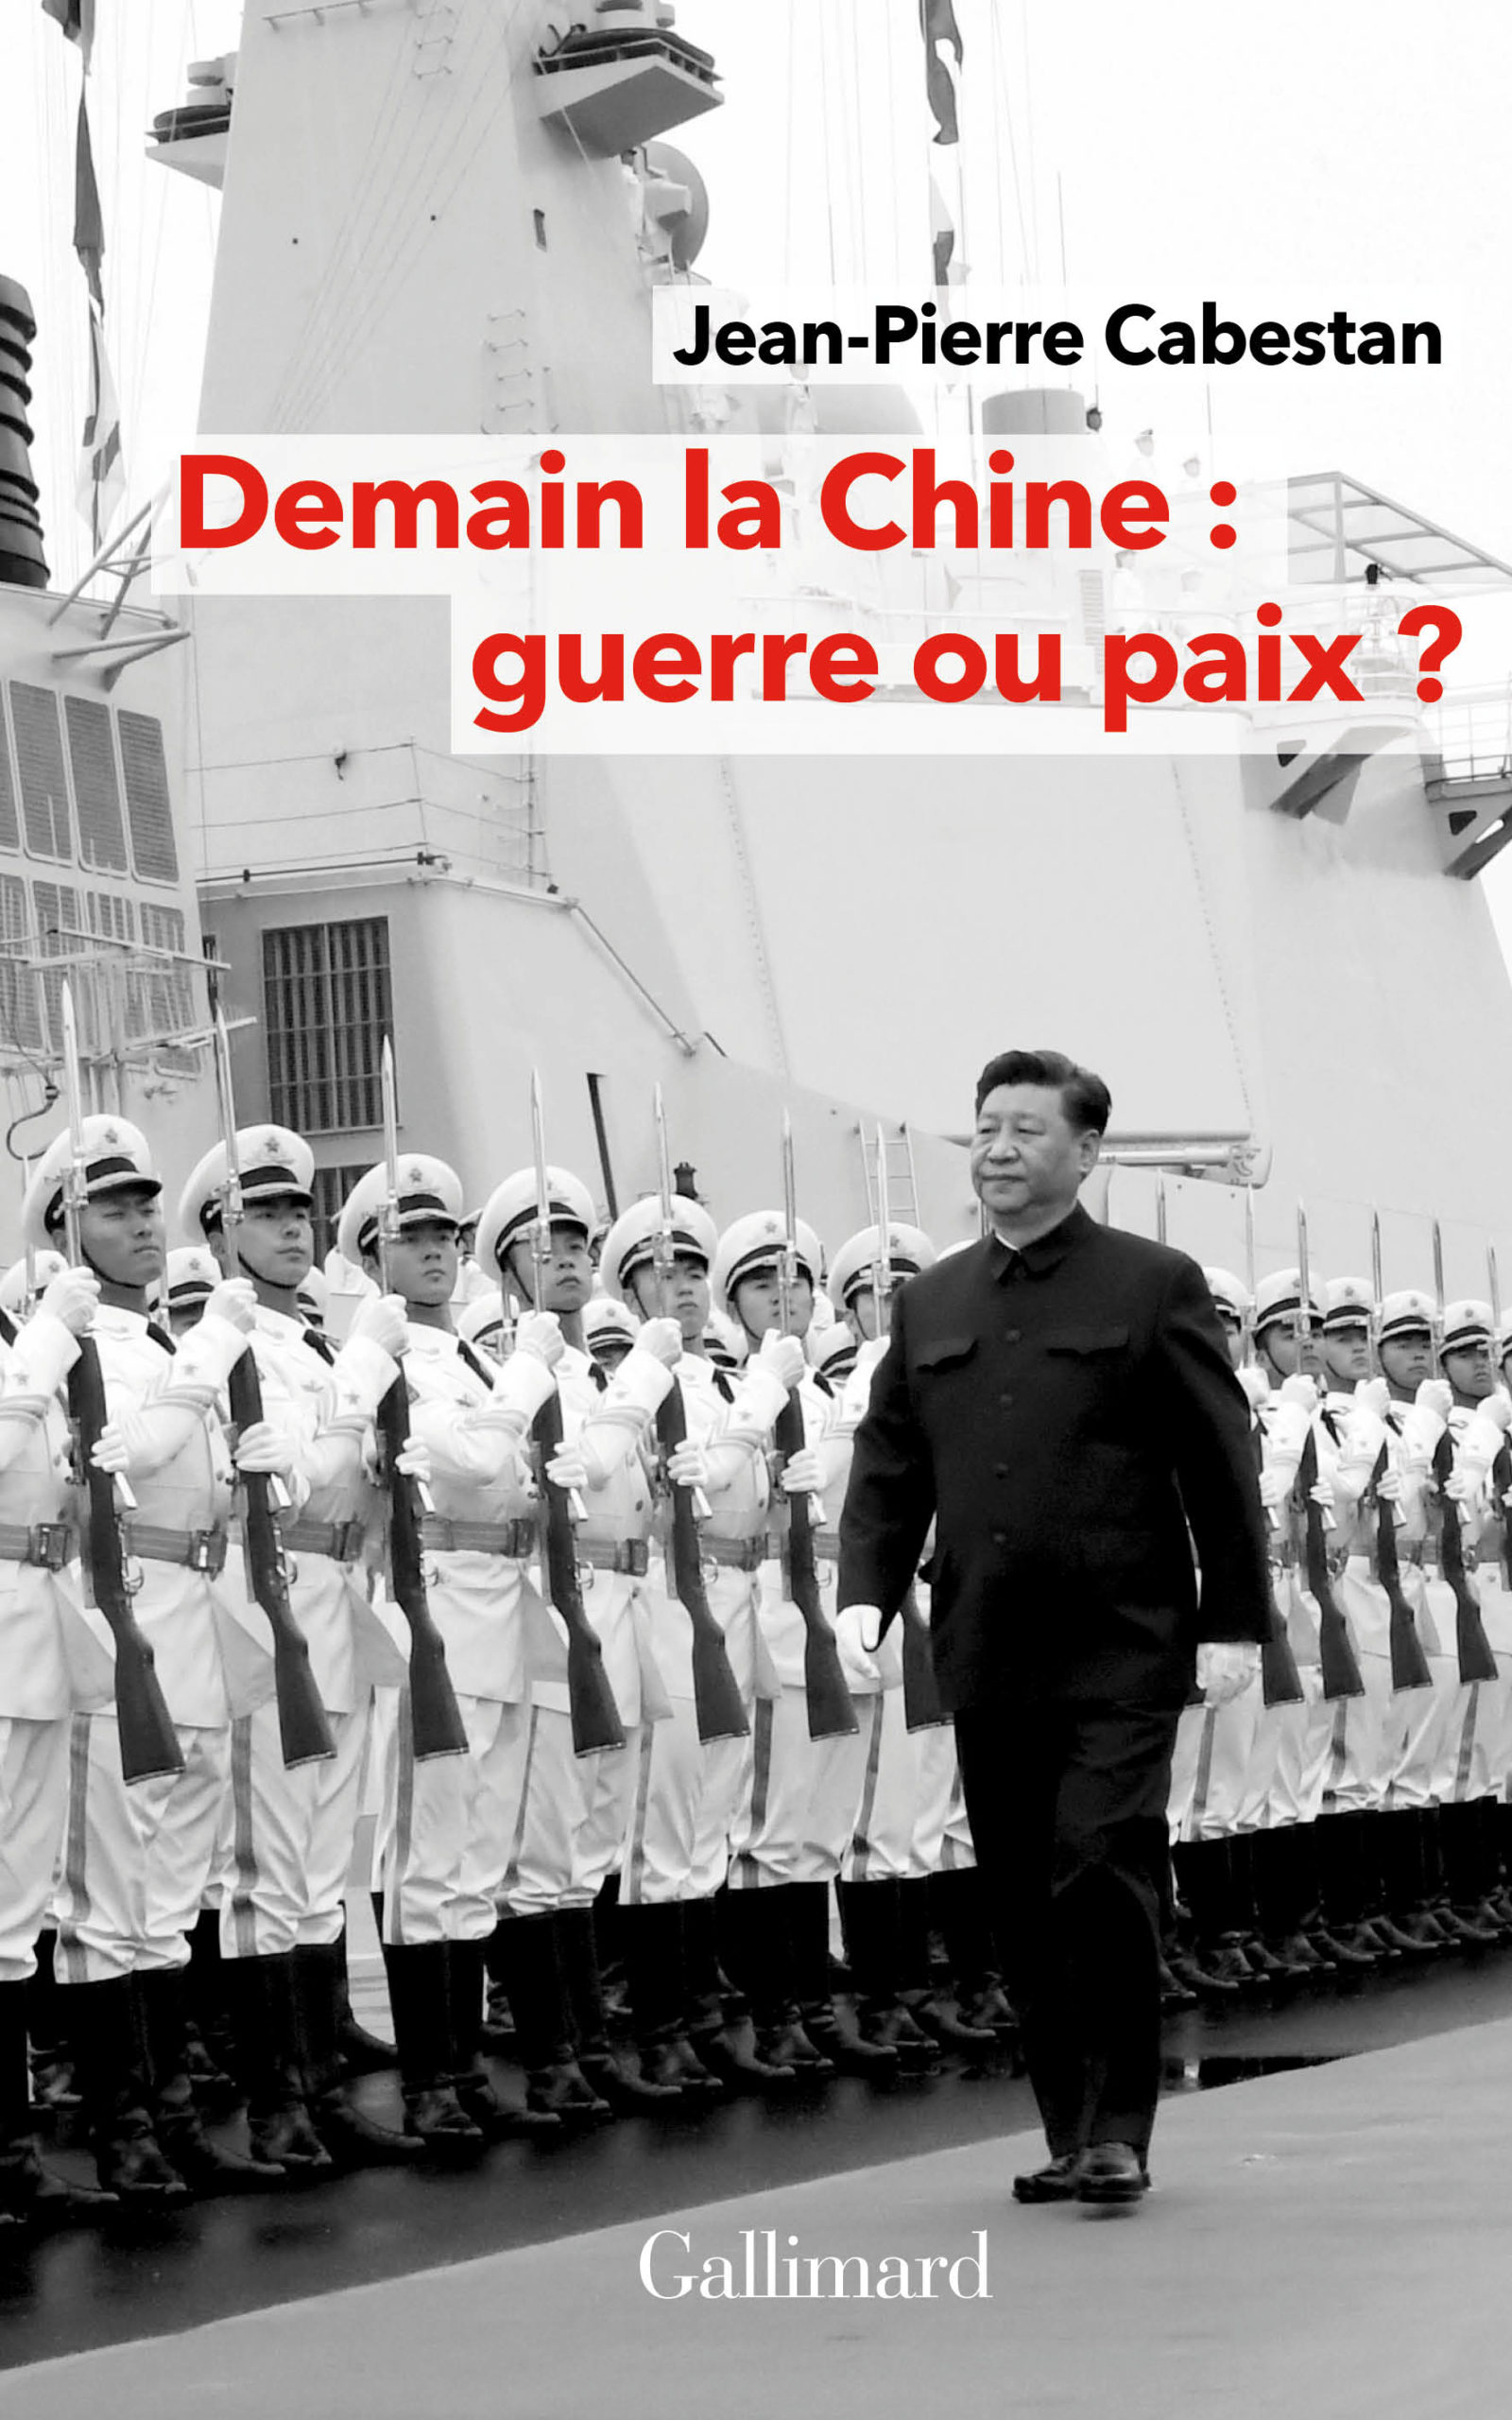 Demain la Chine : guerre ou paix ? De Jean-Pierre Cabestan paraît chez Gallimard.